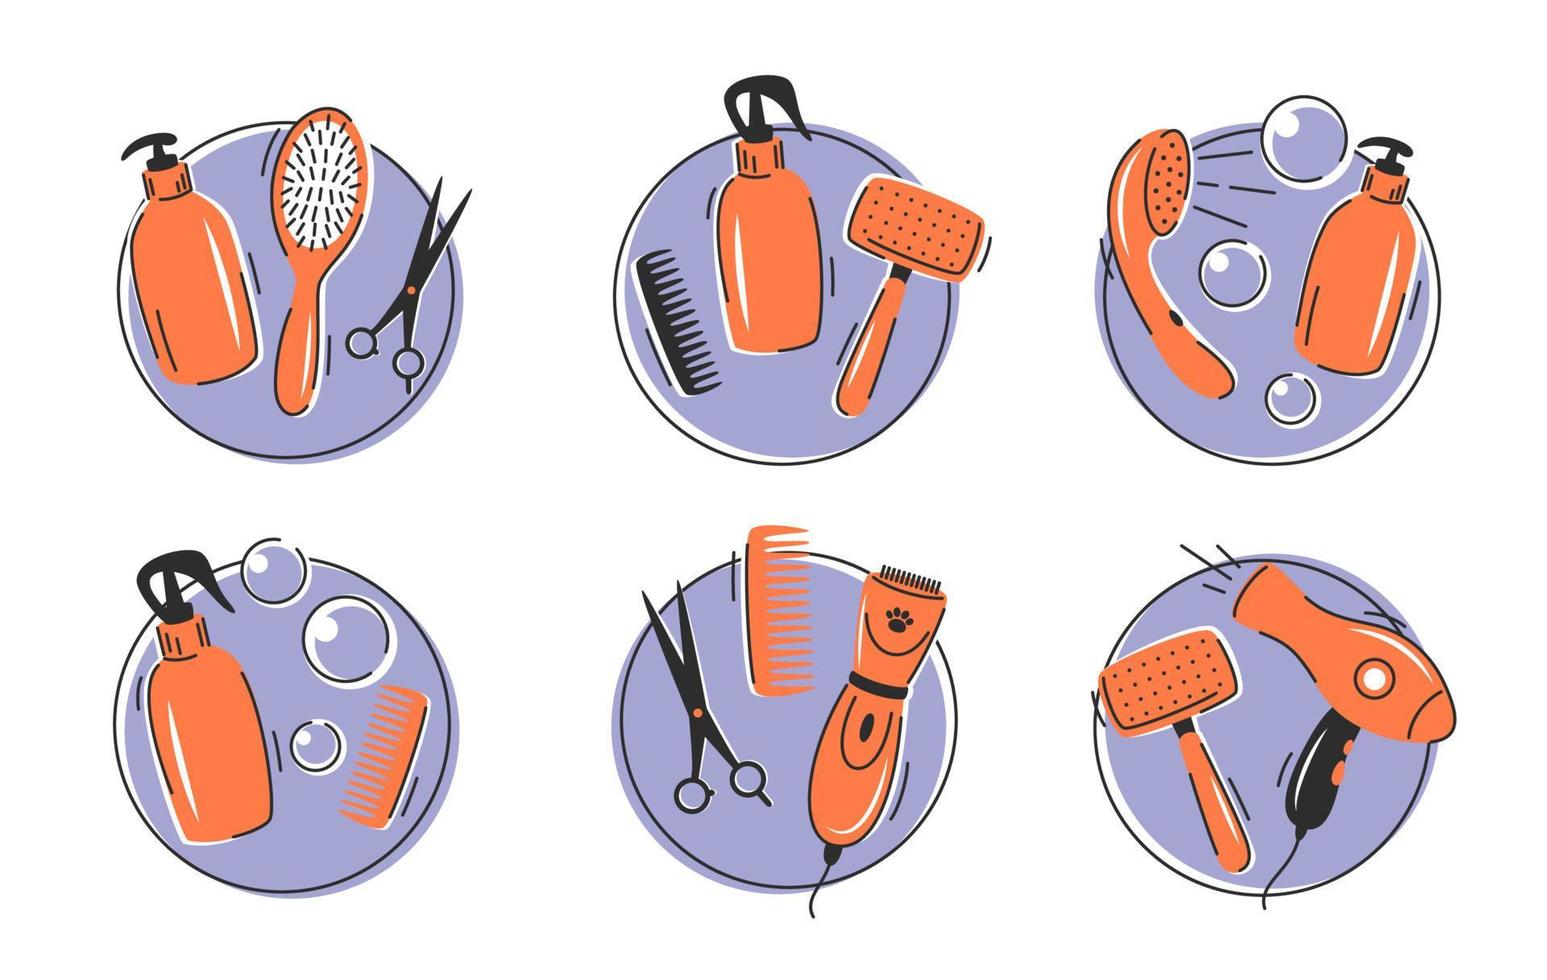 Haustier Pflege Symbole einstellen mit anders Werkzeuge zum Tier Haar Körperpflege, Haarschnitte, Baden, Hygiene. Haustier Körperpflege. Vektor Illustration.